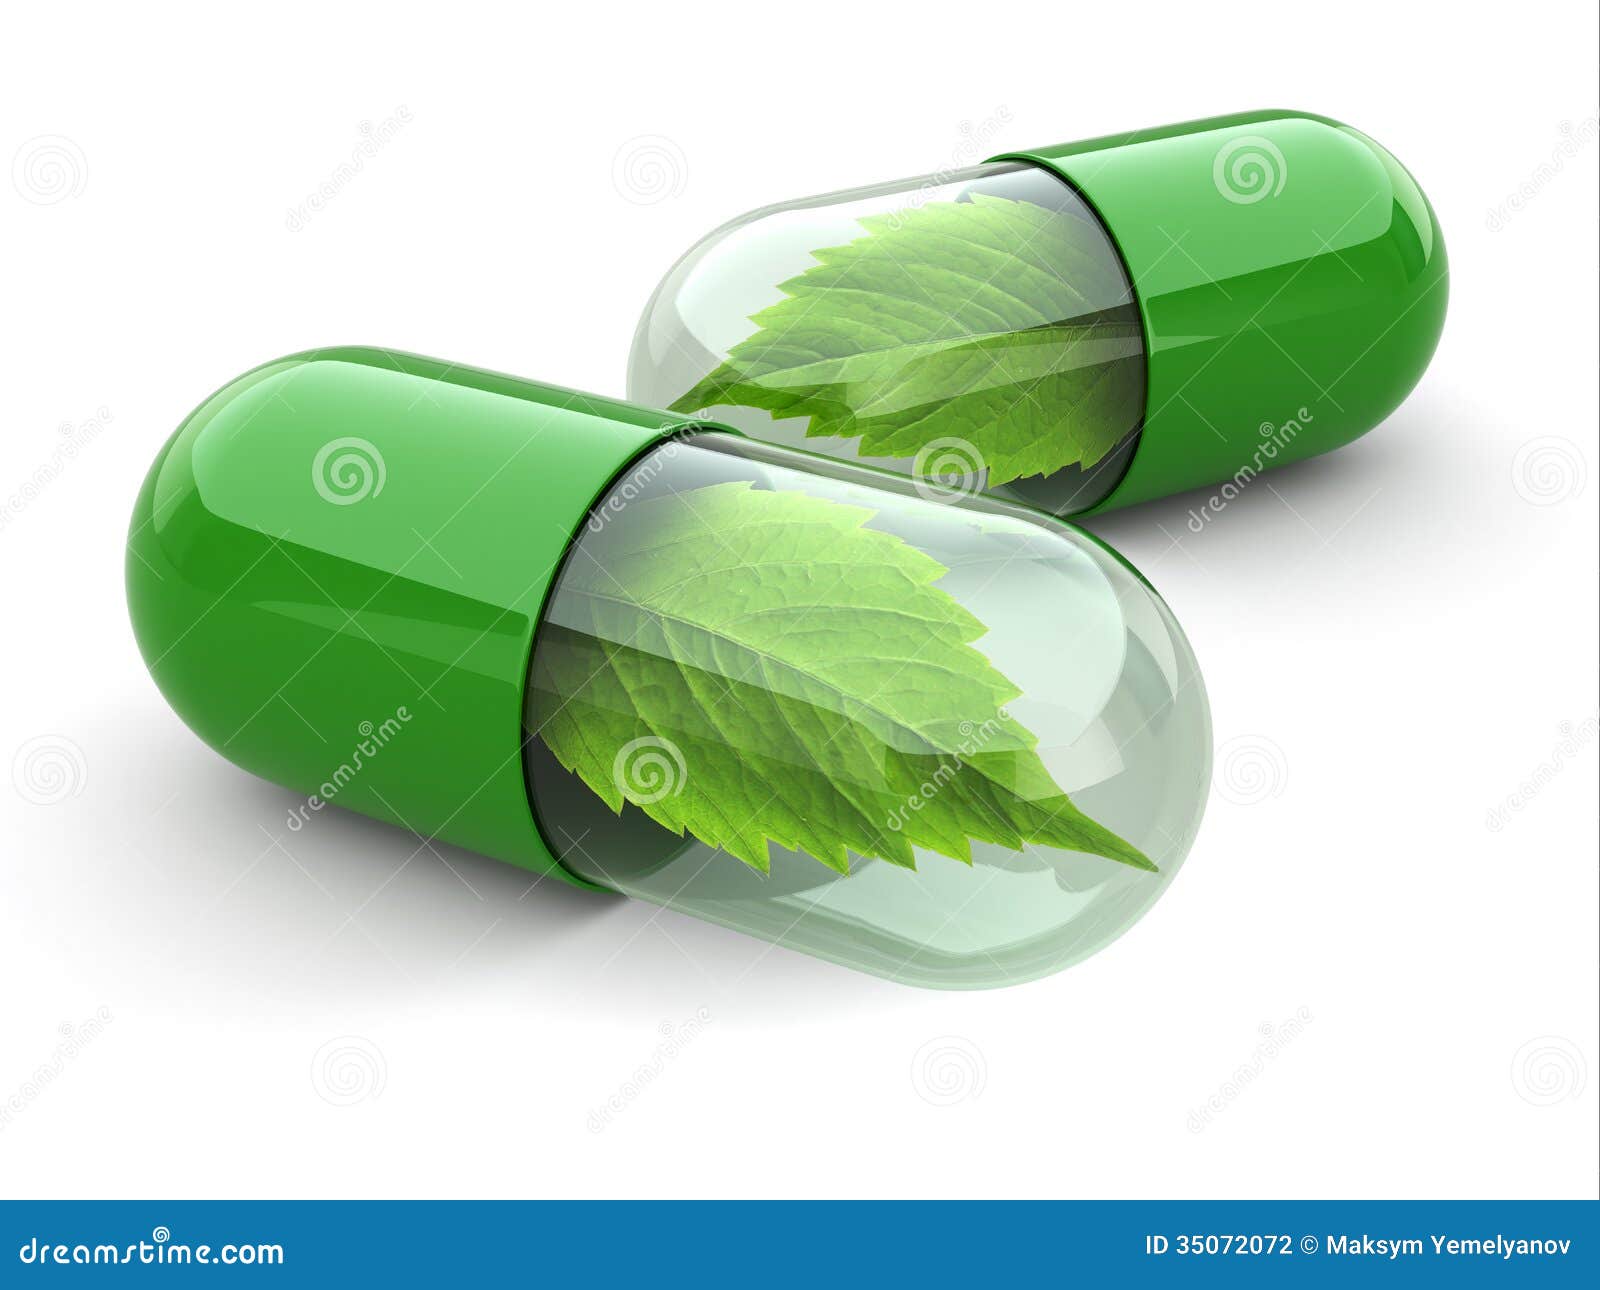 natural vitamin pills. alternative medicine.